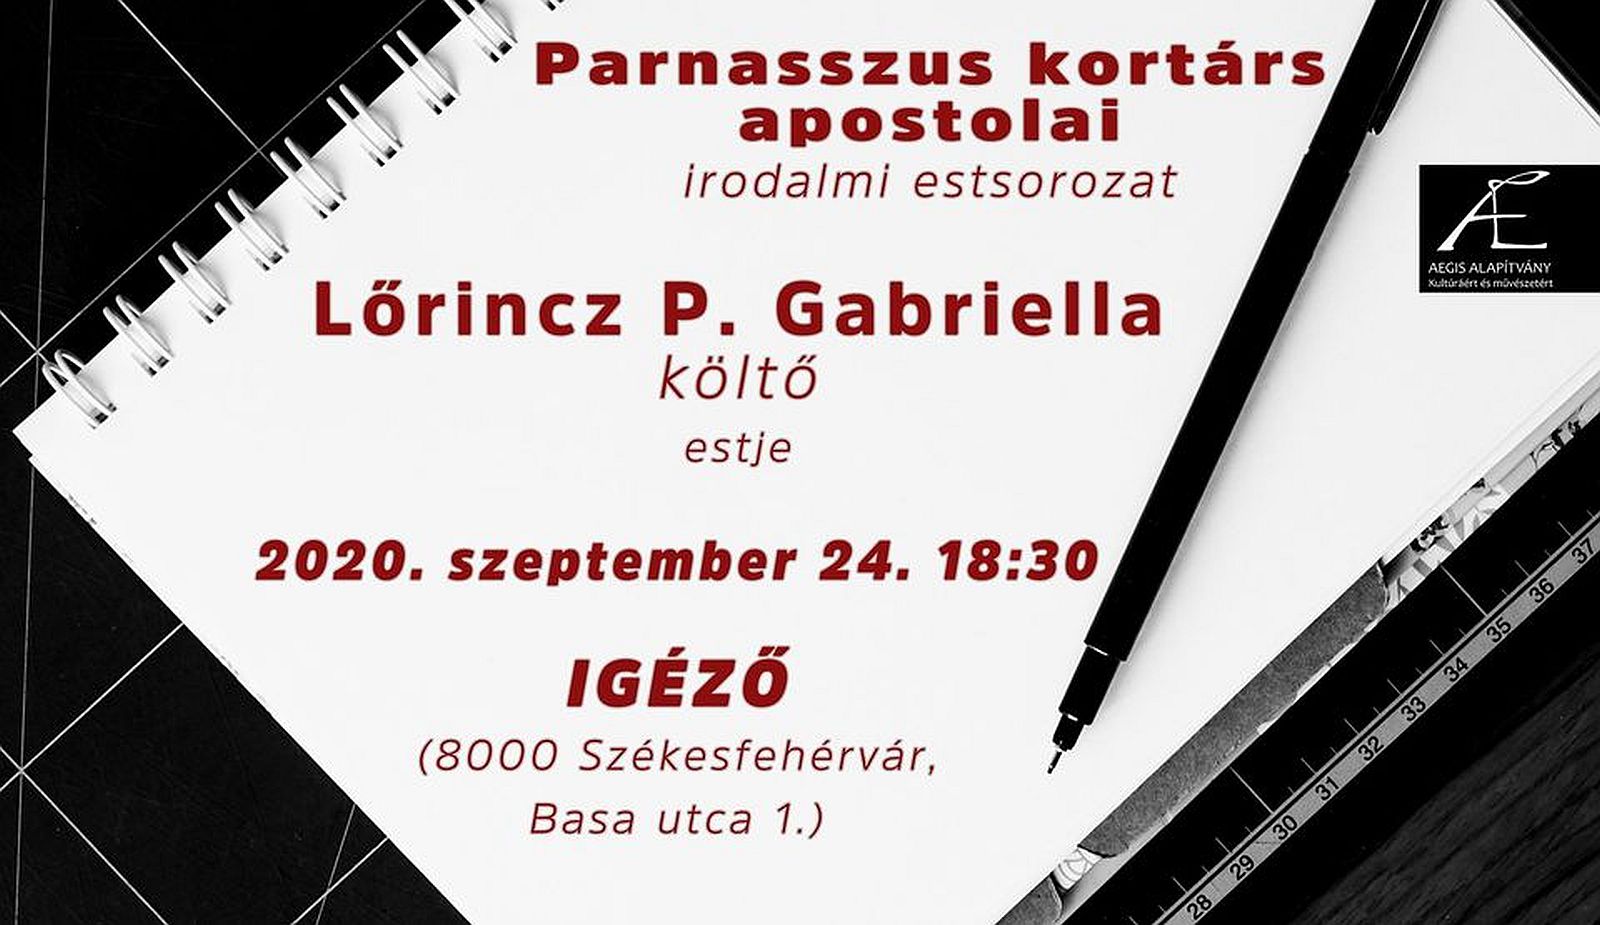 A Parnasszus kortárs apostolai - Lőrincz P. Gabriella lesz a vendég csütörtökön az Igézőben